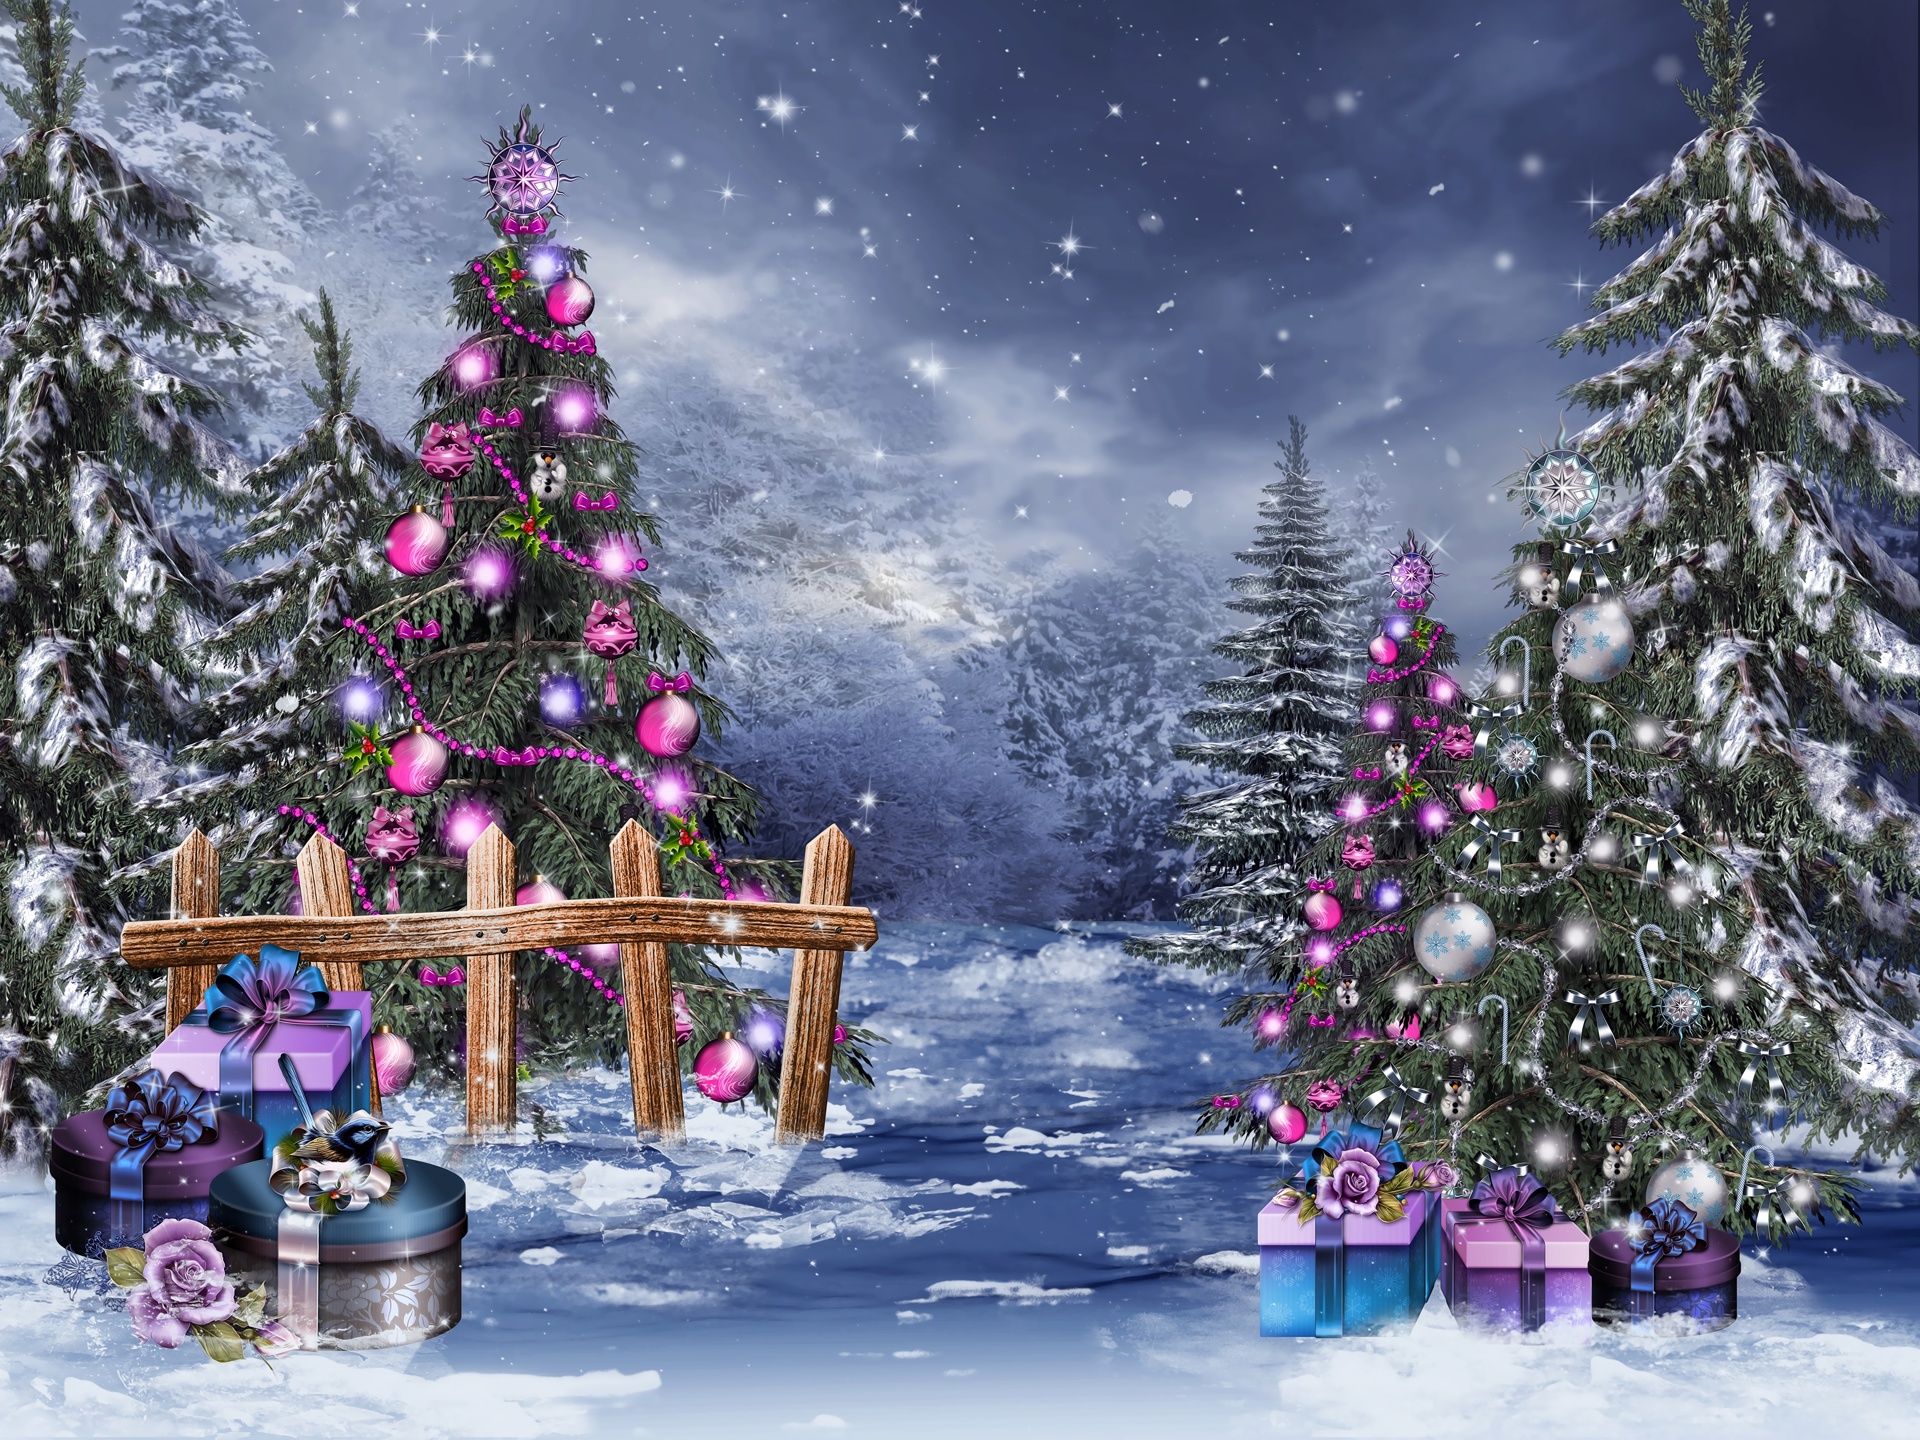 Bạn muốn có cây thông Noel đẹp nhất để trang trí cho mùa Giáng sinh sắp tới? Đến ngay với những hình ảnh đẹp nhất từ khắp nơi trên thế giới và tìm kiếm nguồn cảm hứng cho riêng mình.